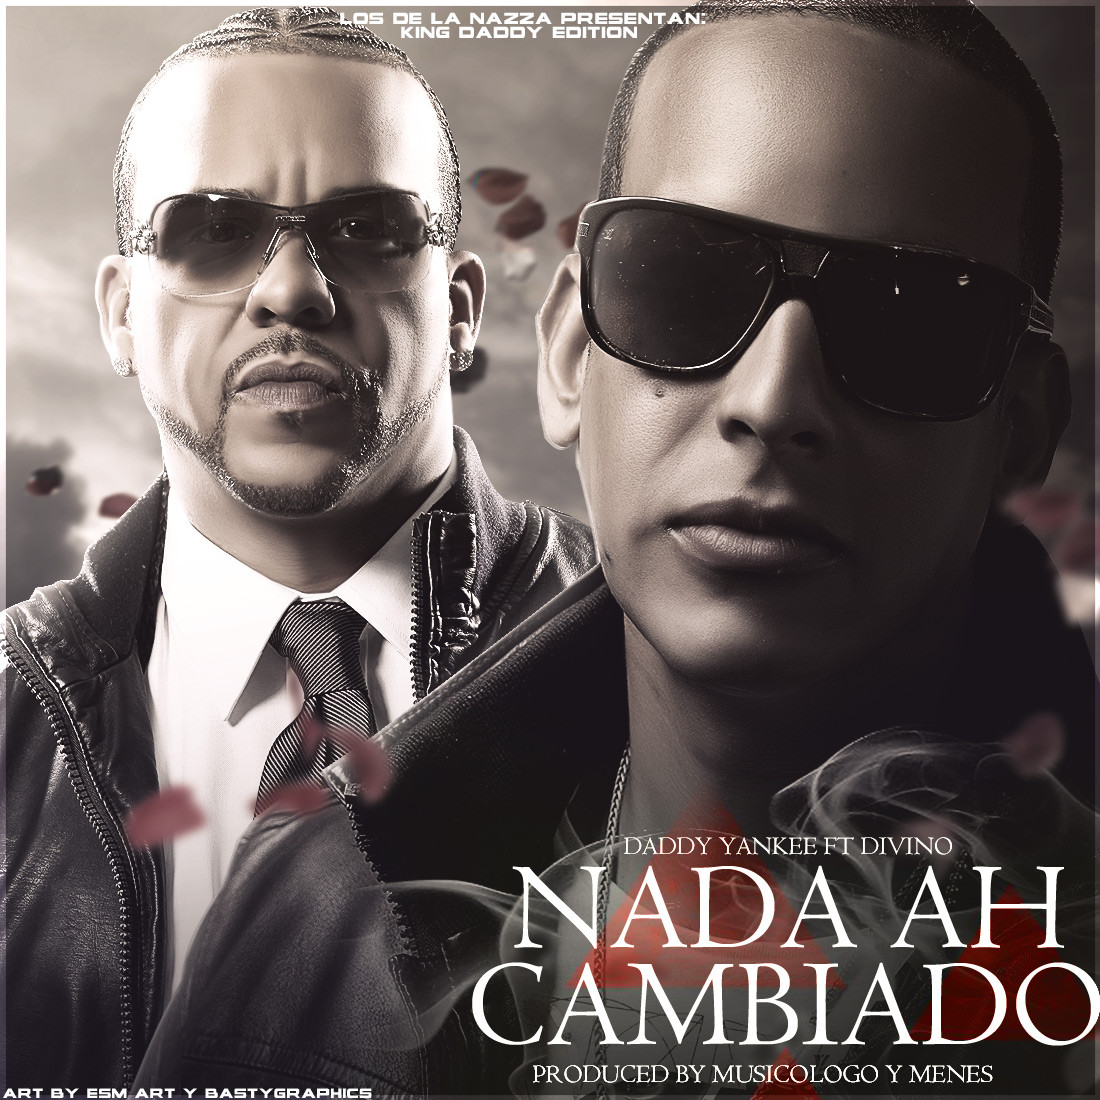 Nada Ha Cambiado - Daddy Yankee ft. Divino